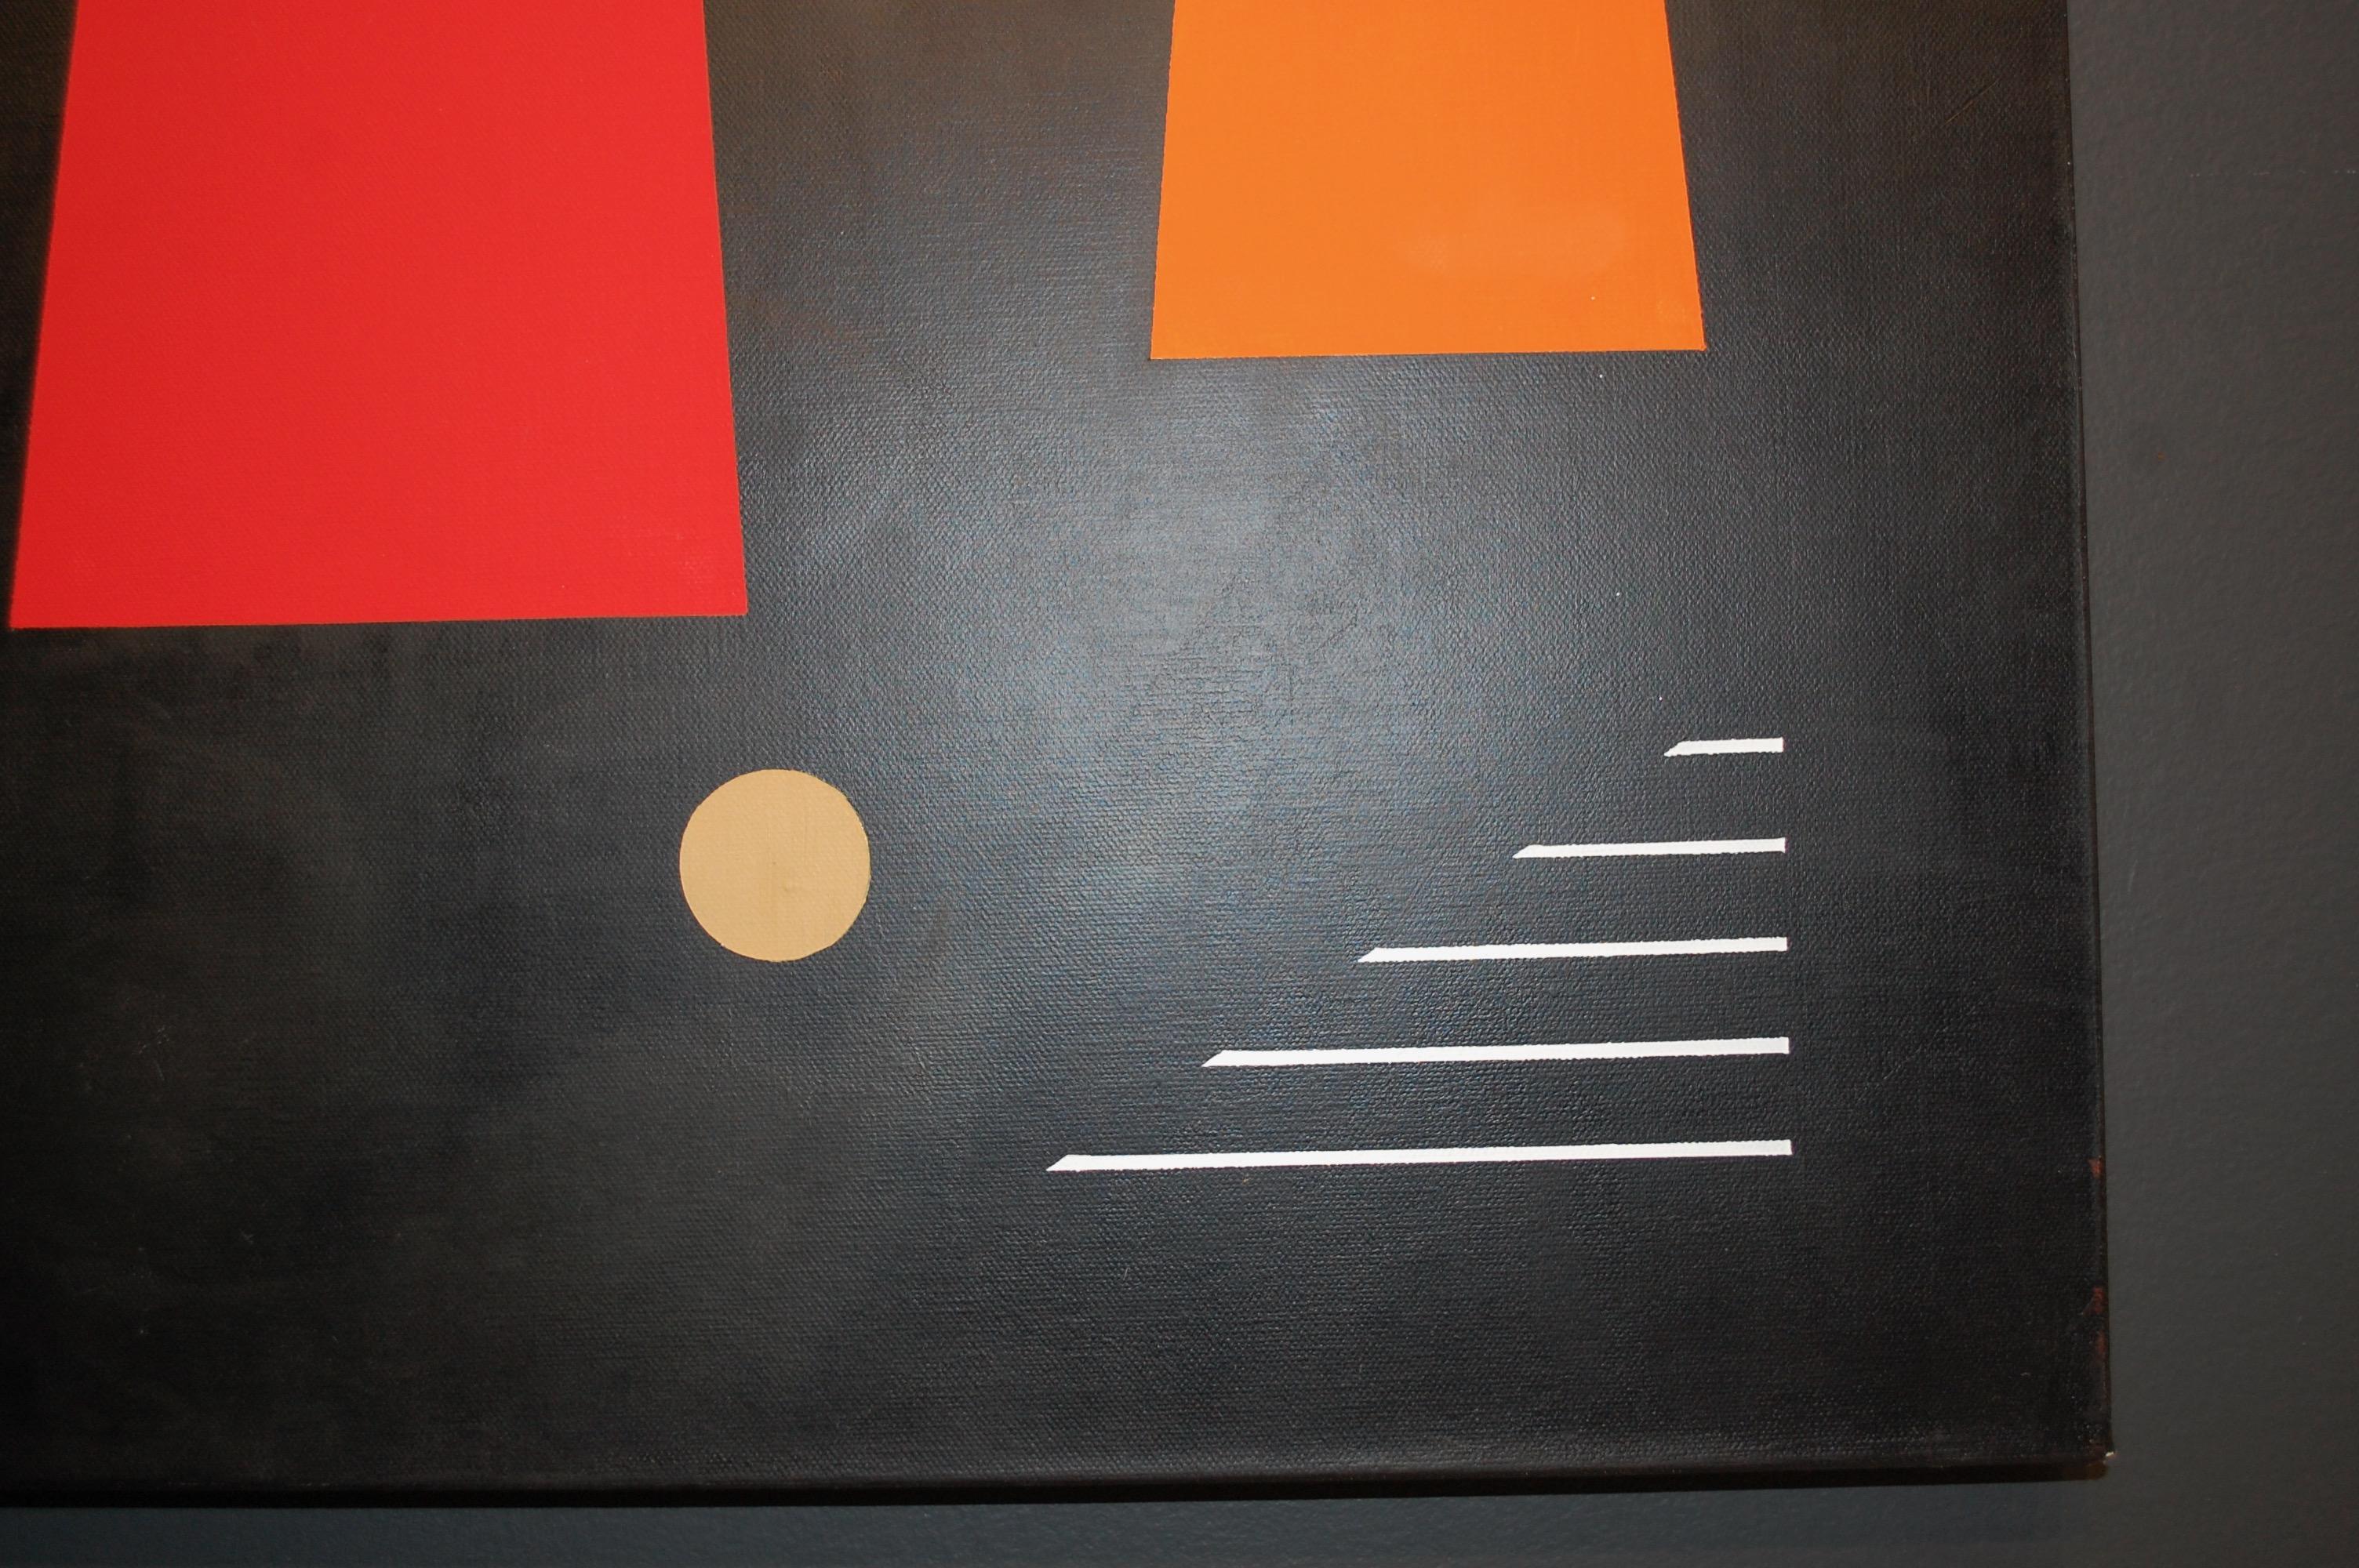 Trio auf Schwarz Geometrisches abstraktes Ölgemälde
Verso vom Künstler signiert, Öl auf Leinwand 48x24
JARO wurde 1934 in Prag in der Tschechischen Republik geboren. Seit seiner Kindheit genoss er den Kunstunterricht in der Schule am meisten. Fast